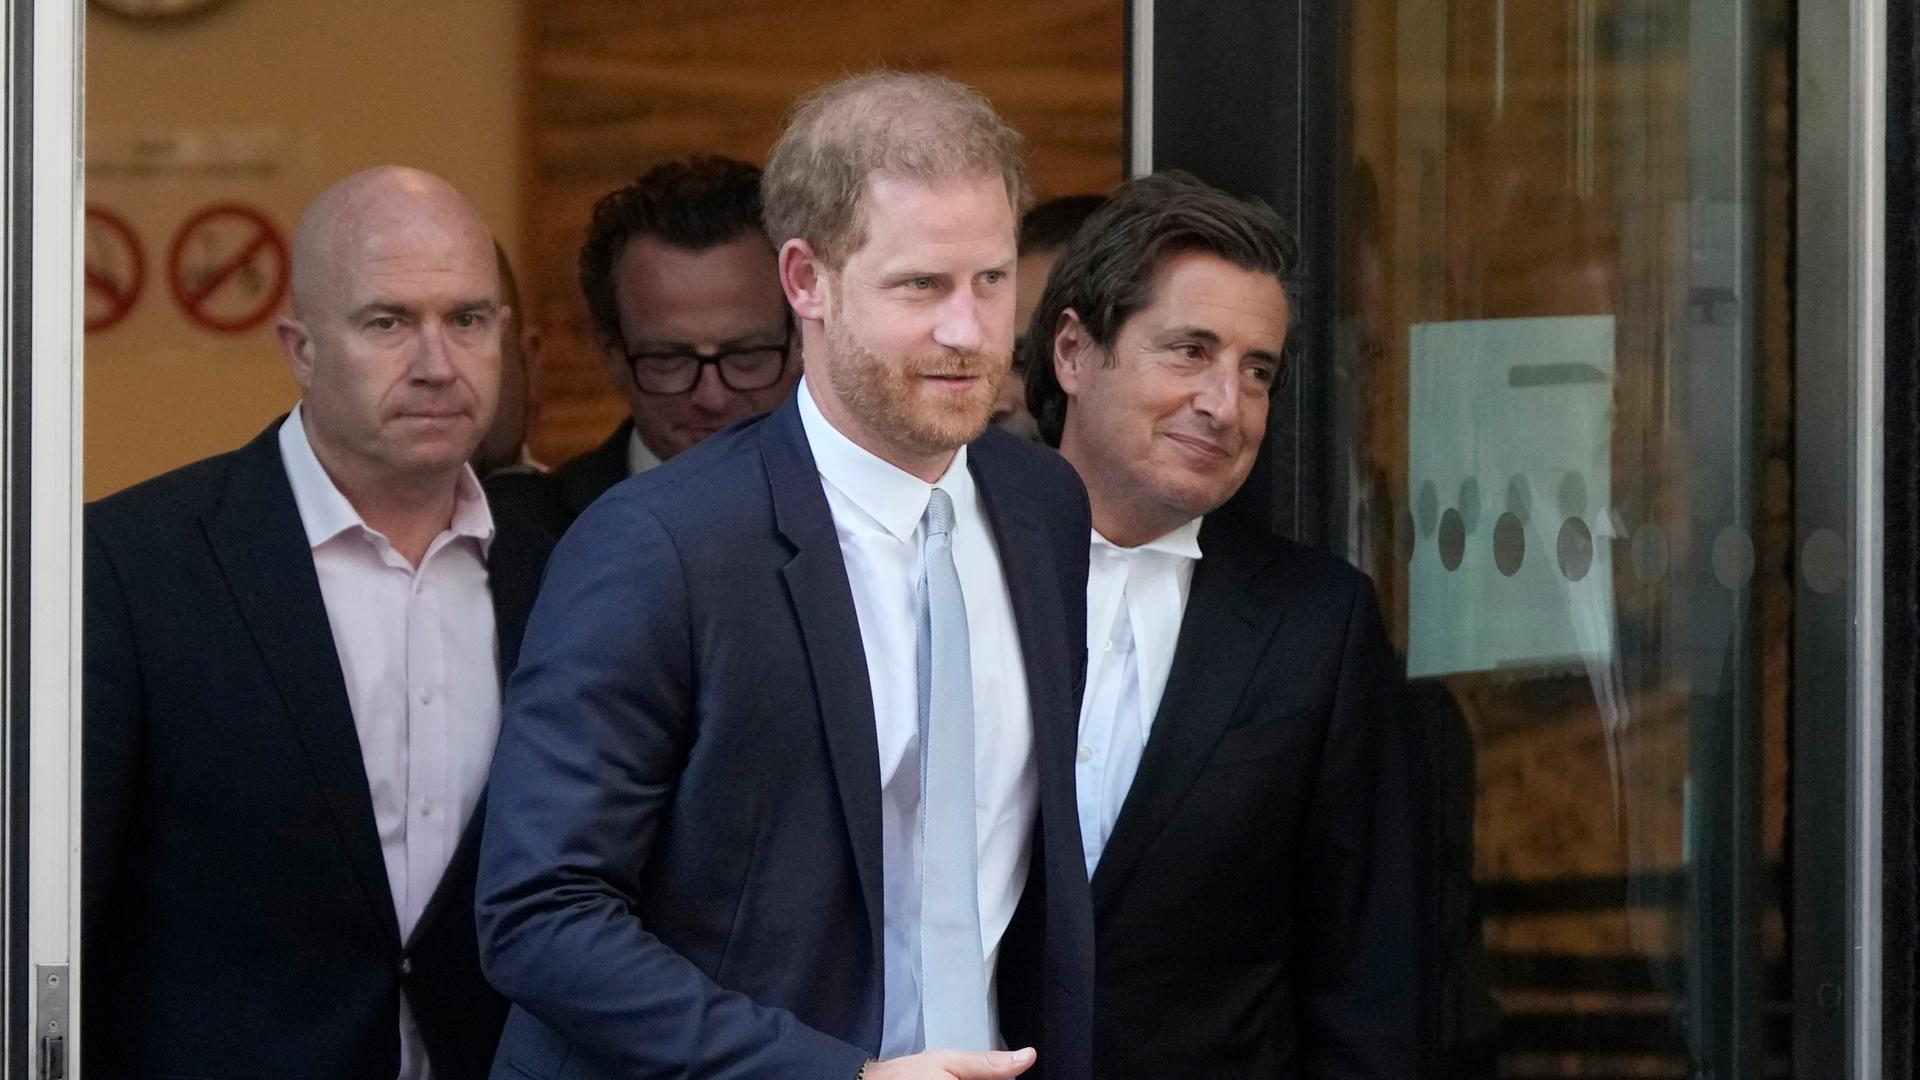 Prinz Harry tritt mit zwei Männern aus einem Gebäude.